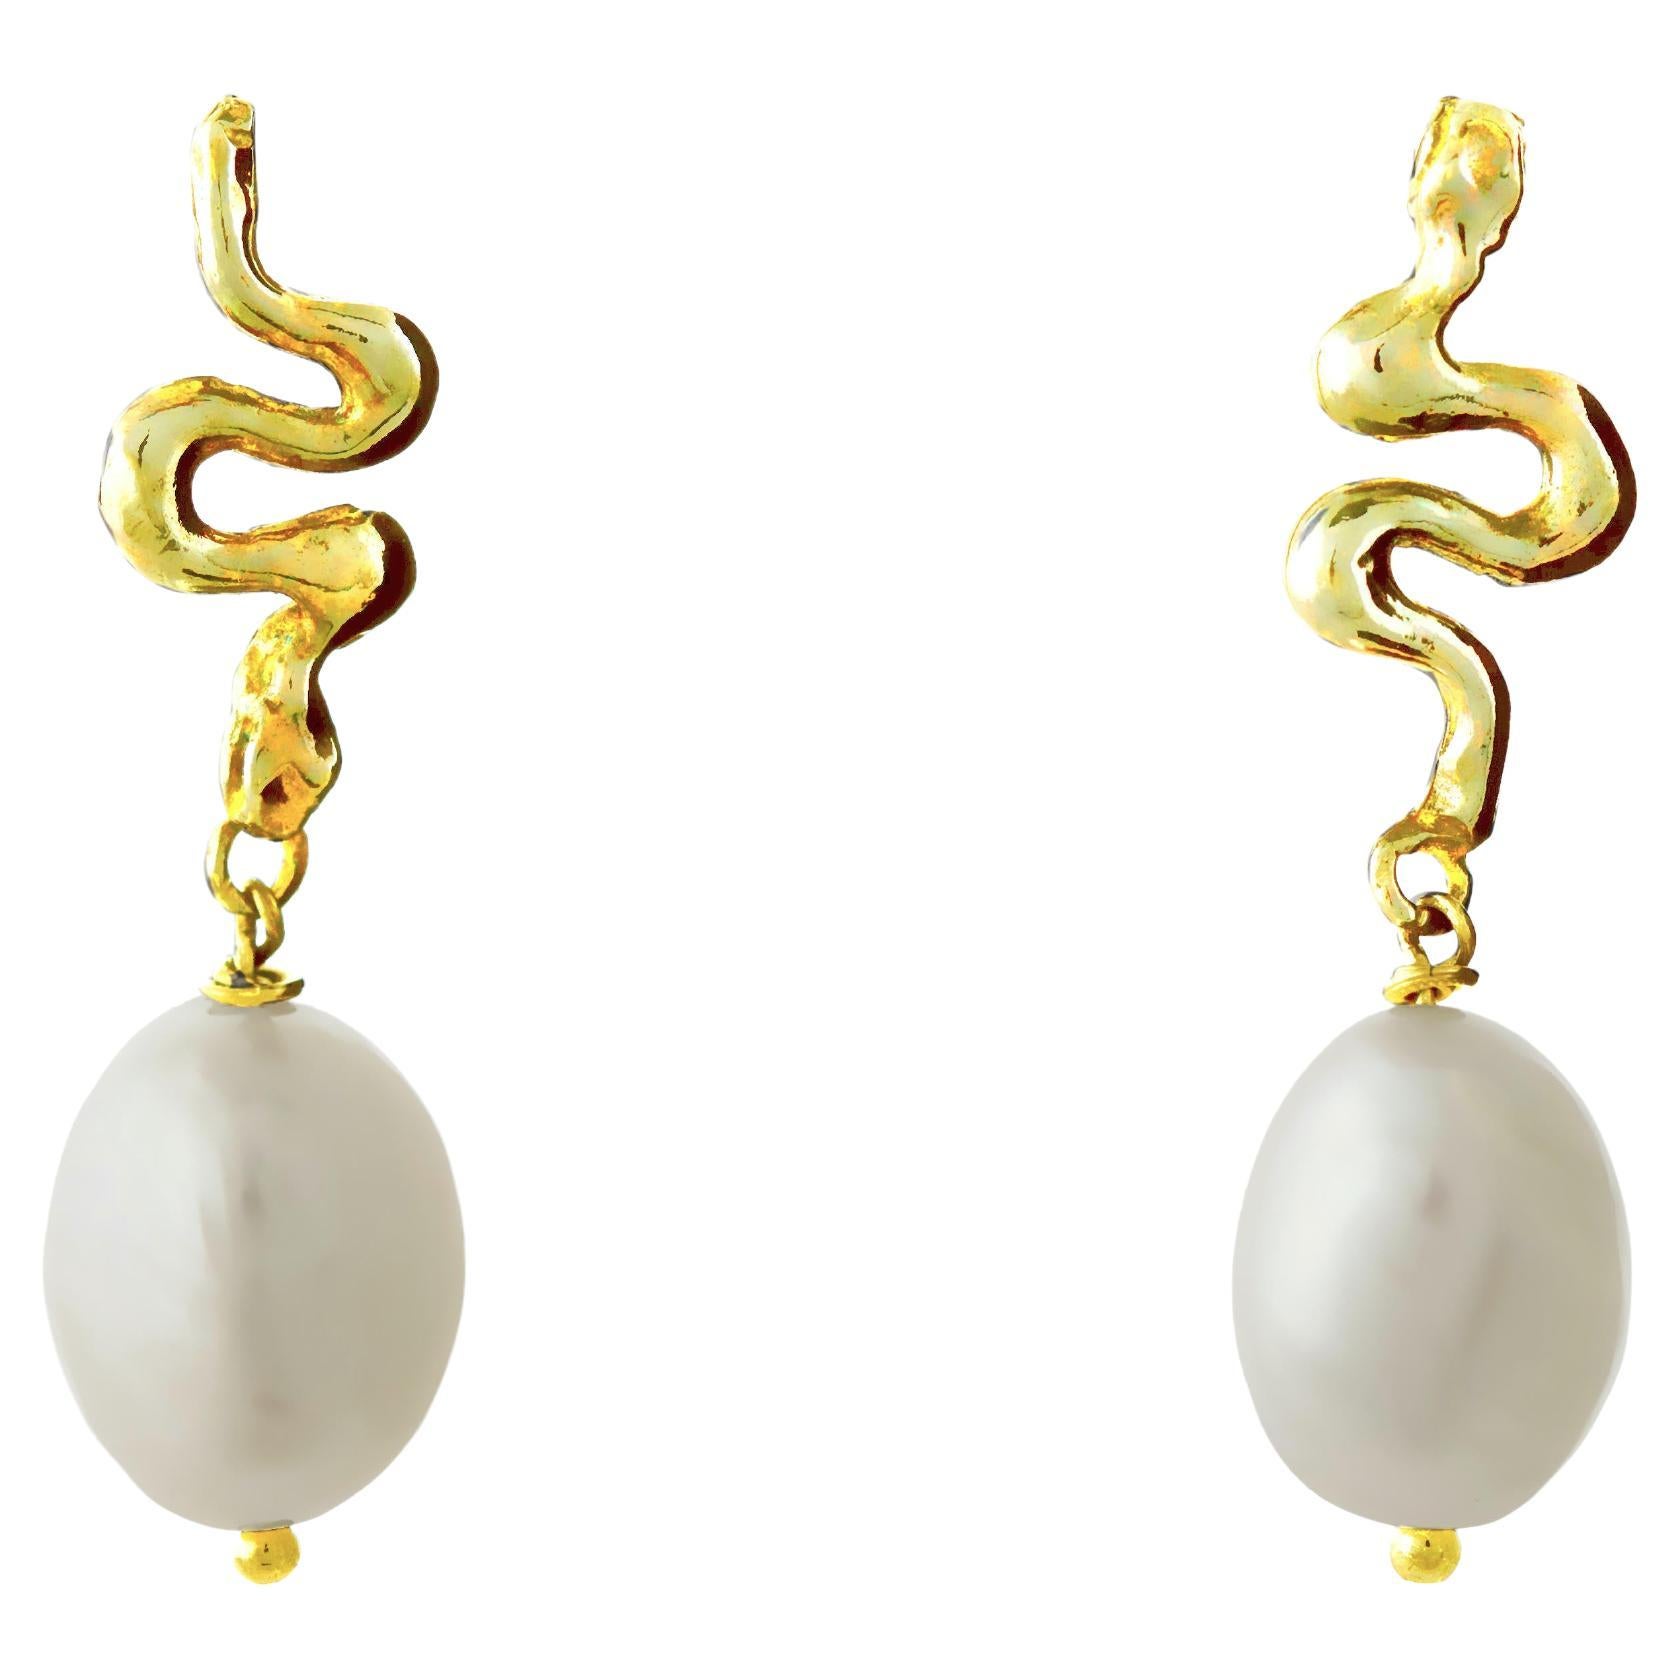 Boucles d'oreilles en or jaune 18 carats avec pendentif petit serpent baroque blanc